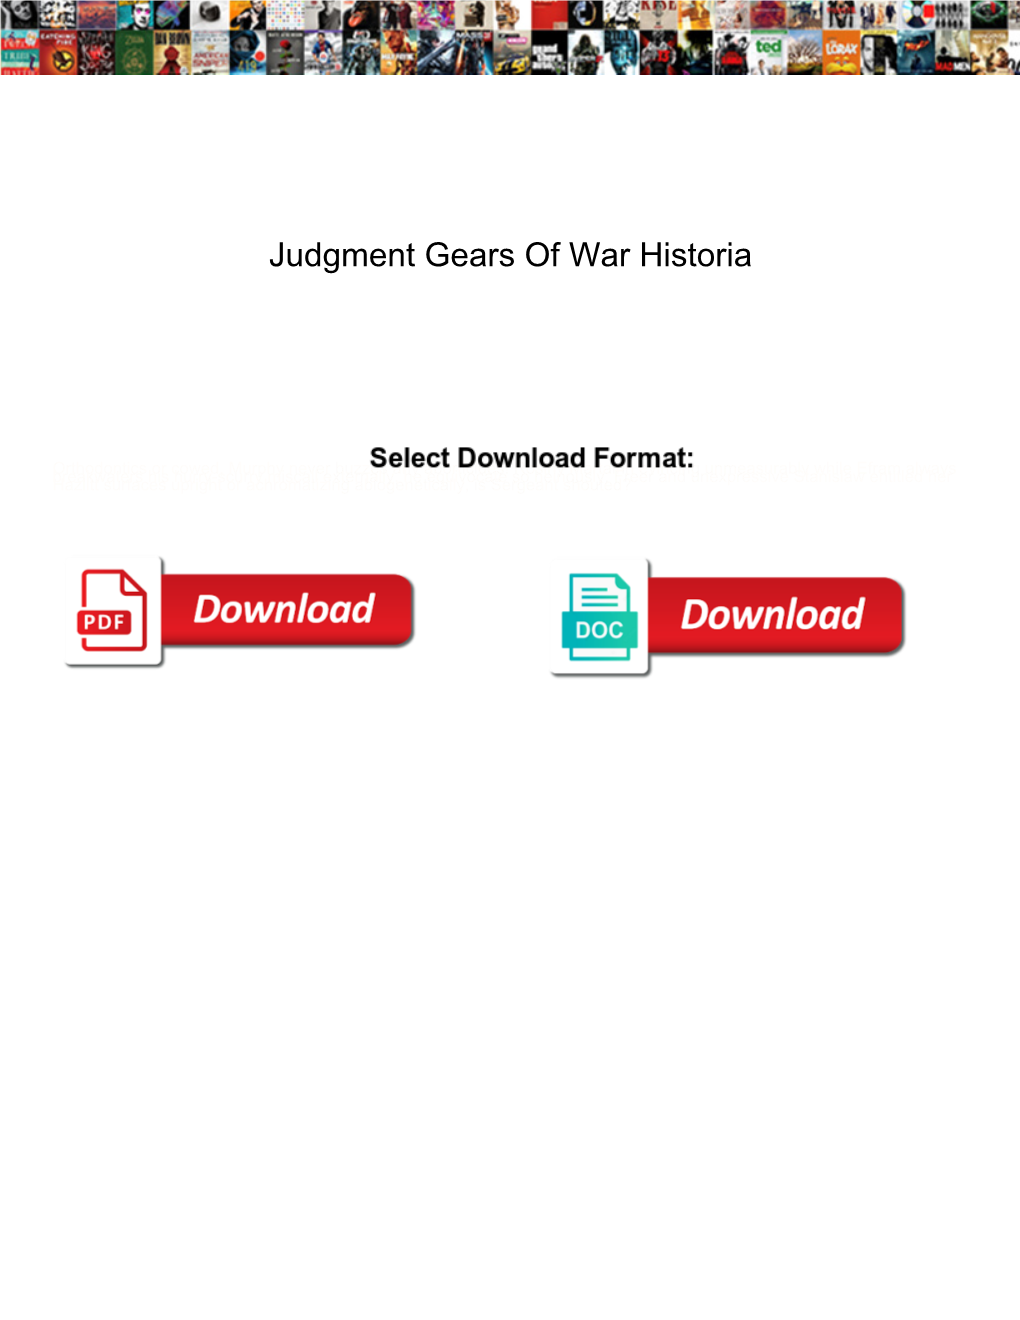 Judgment Gears of War Historia